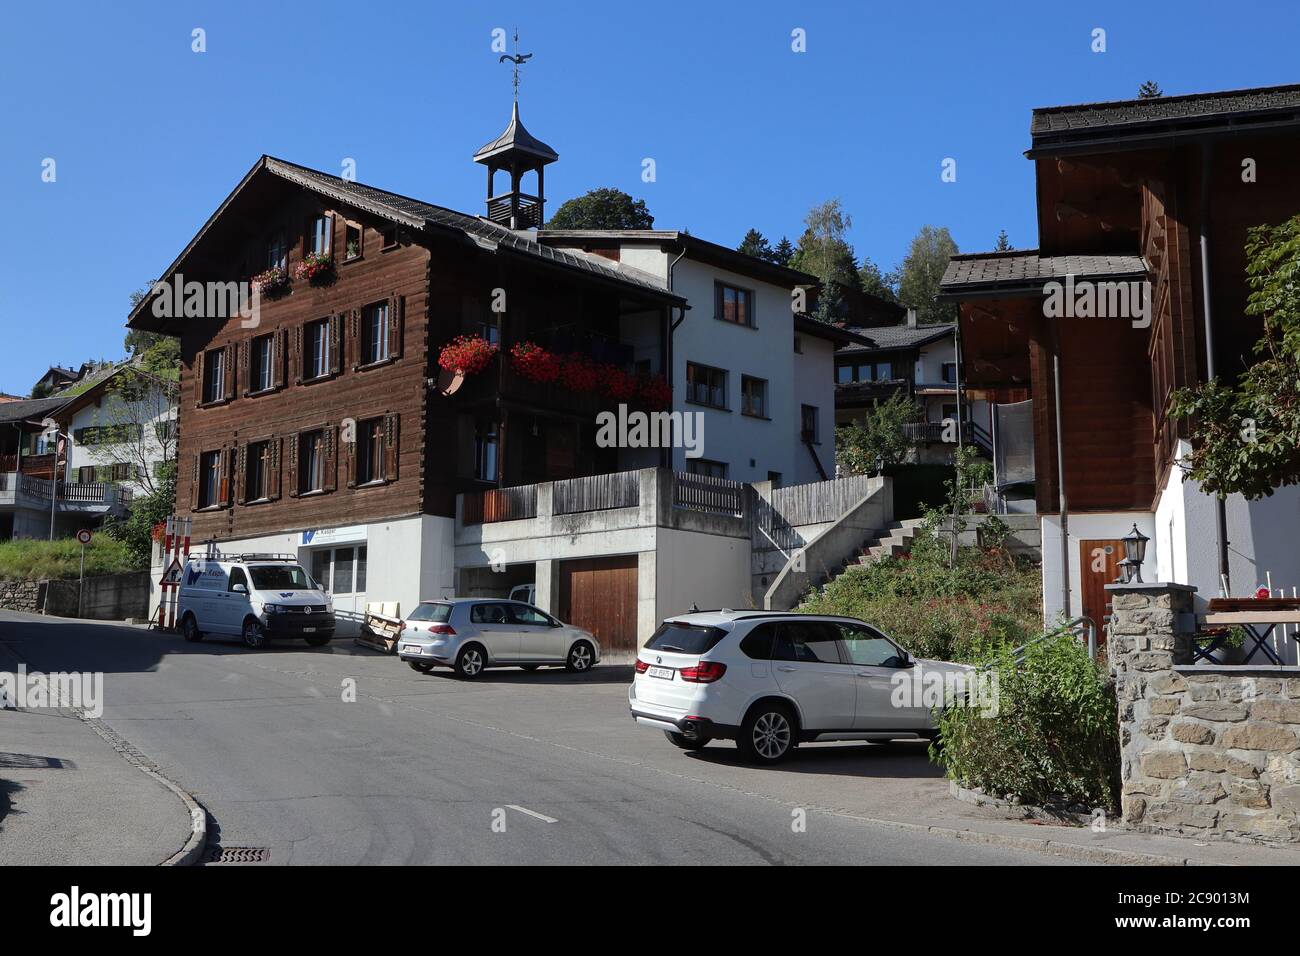 Luzein, Kanton Graubuenden (GR)/ Switzerland - September 21 2019: In the centre of village Pany in Praettigau, Graubuenden, Switzerland Stock Photo